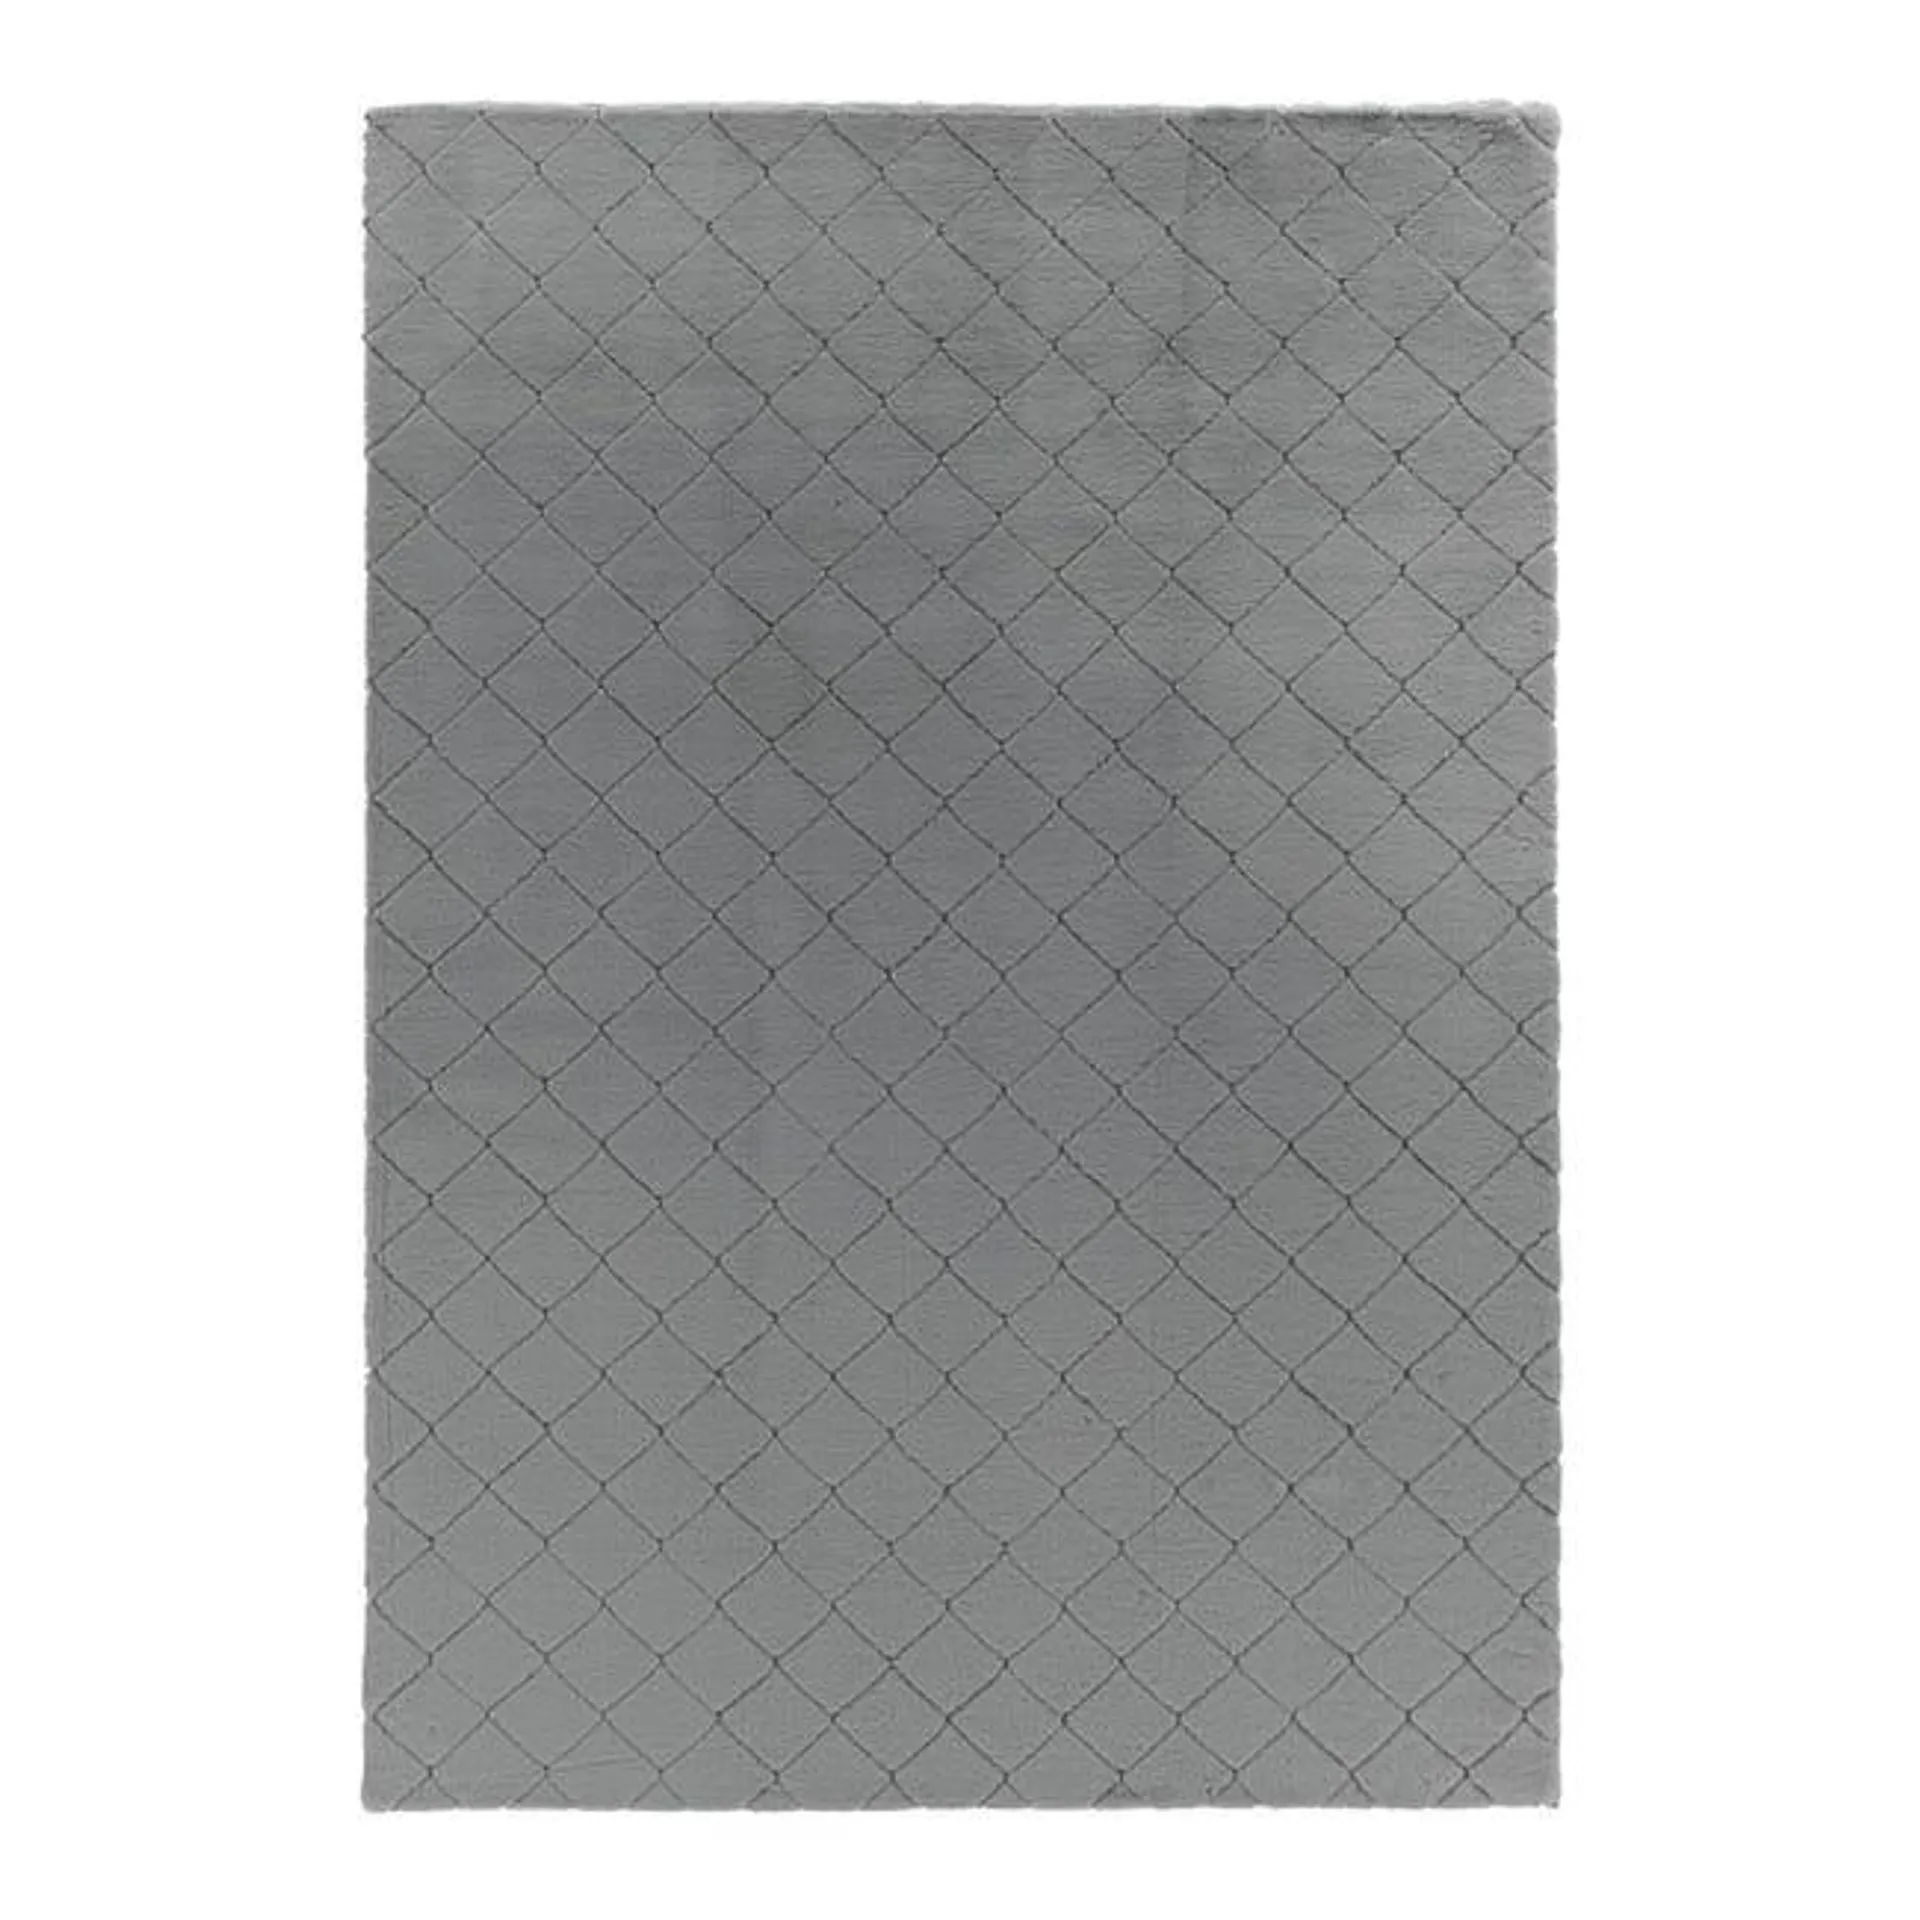 Tappeto Lop quilt poliestere, grigio chiaro, 160x230 cm Vedi i dettagli del prodotto